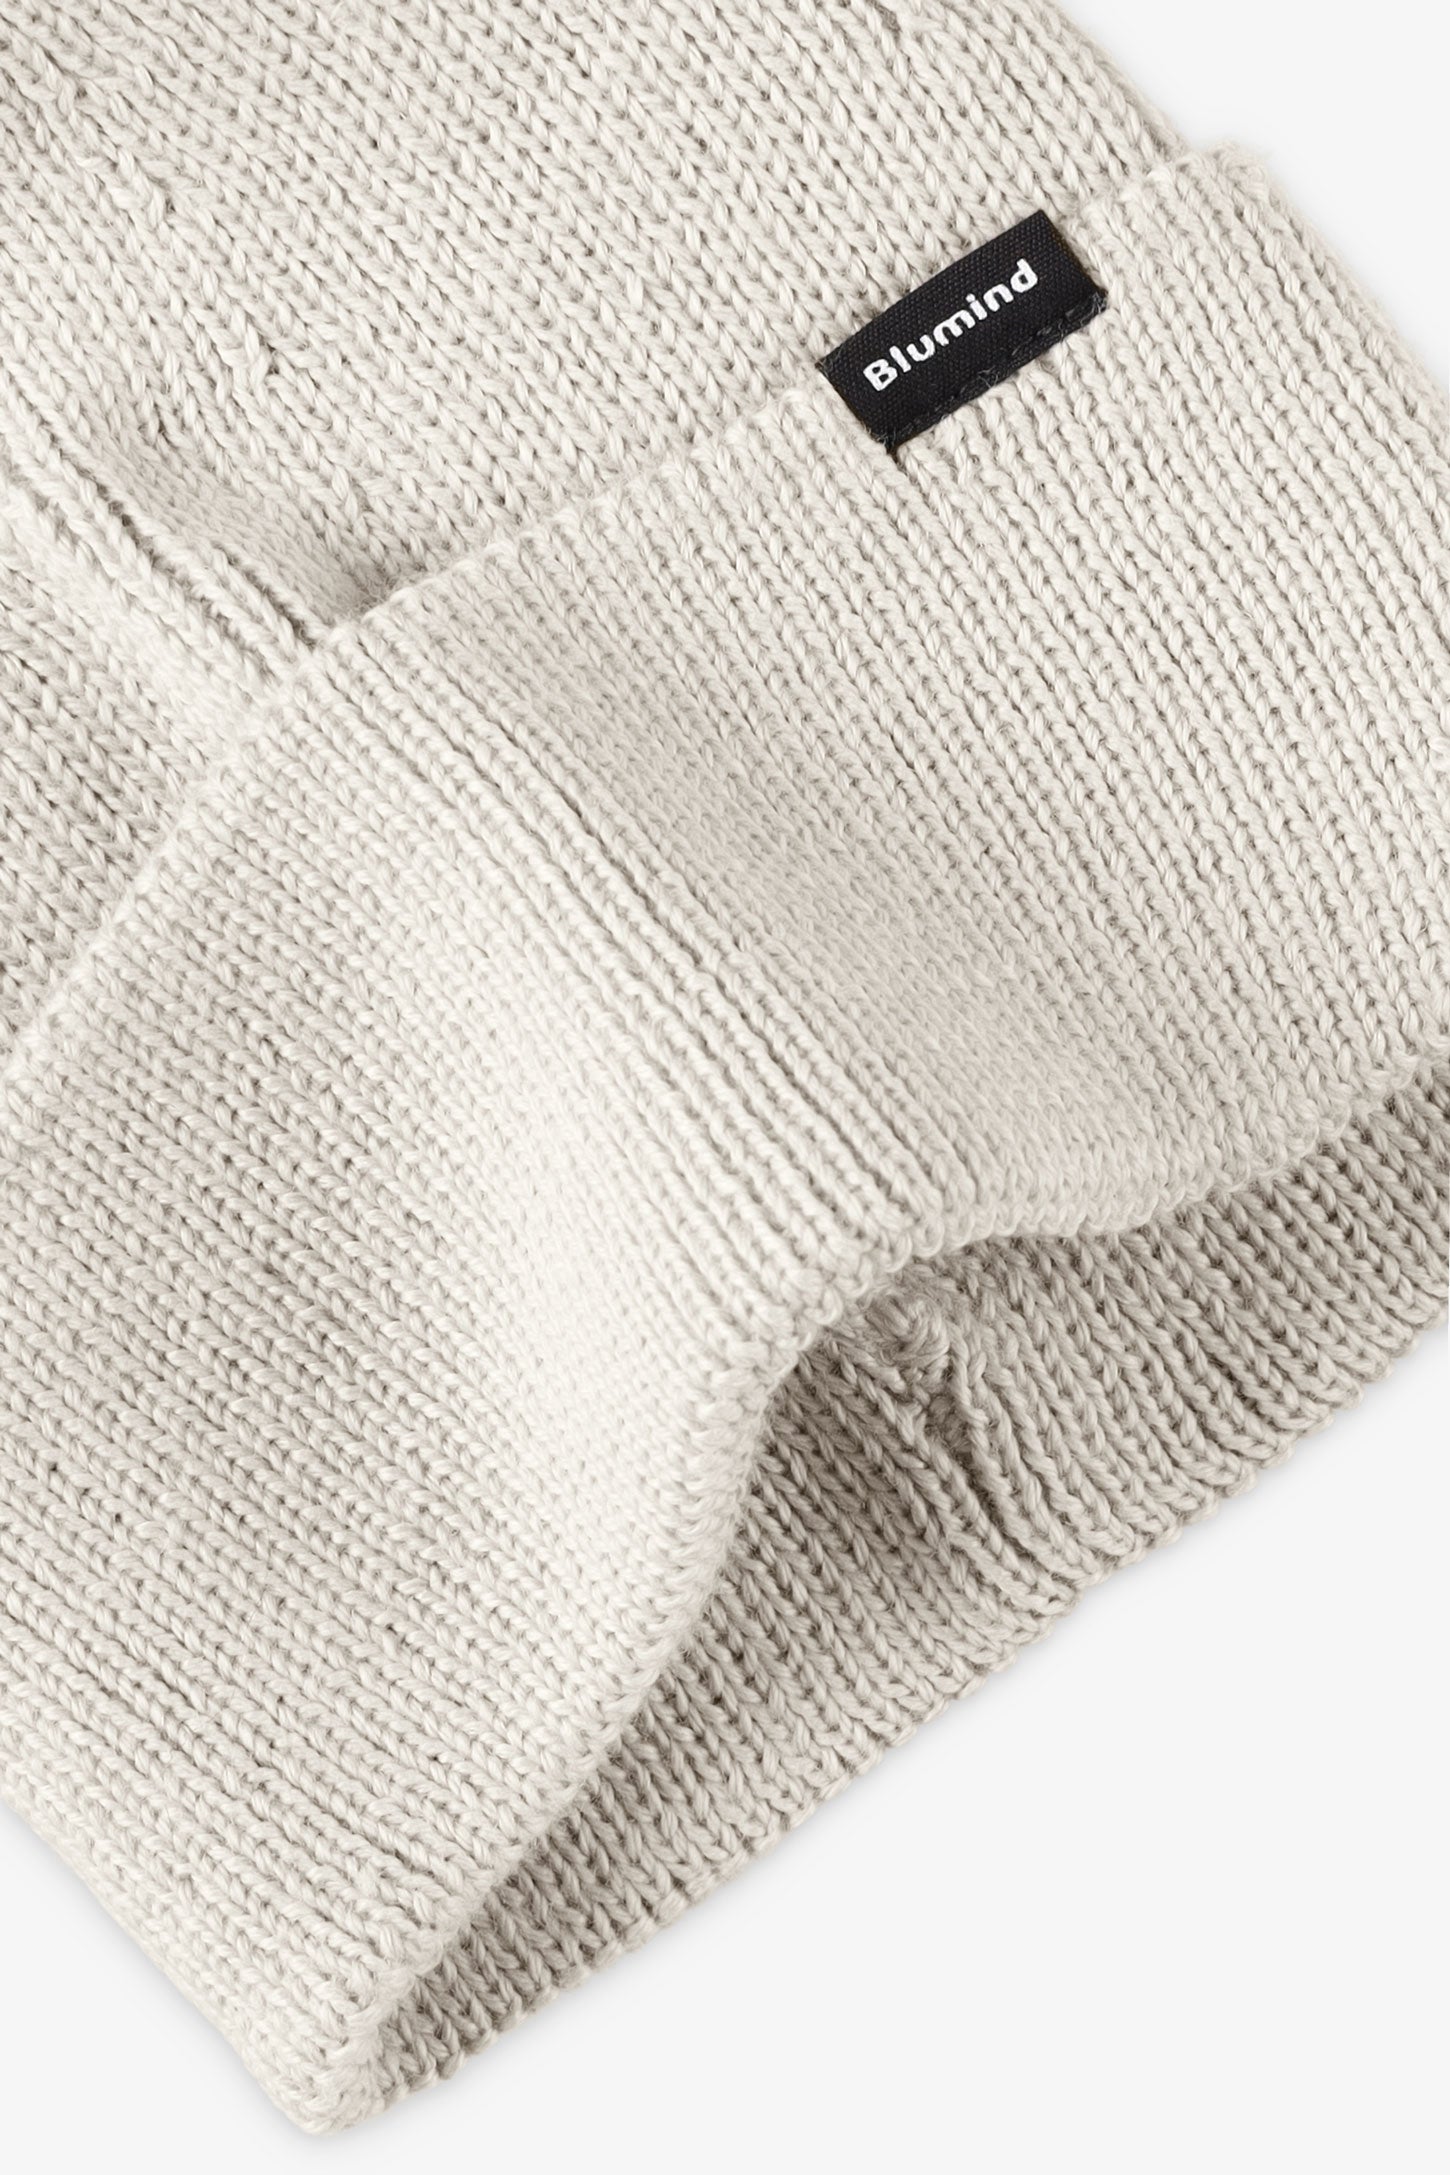 Tuque en tricot doublée polyester recyclé - Ado fille && SABLE